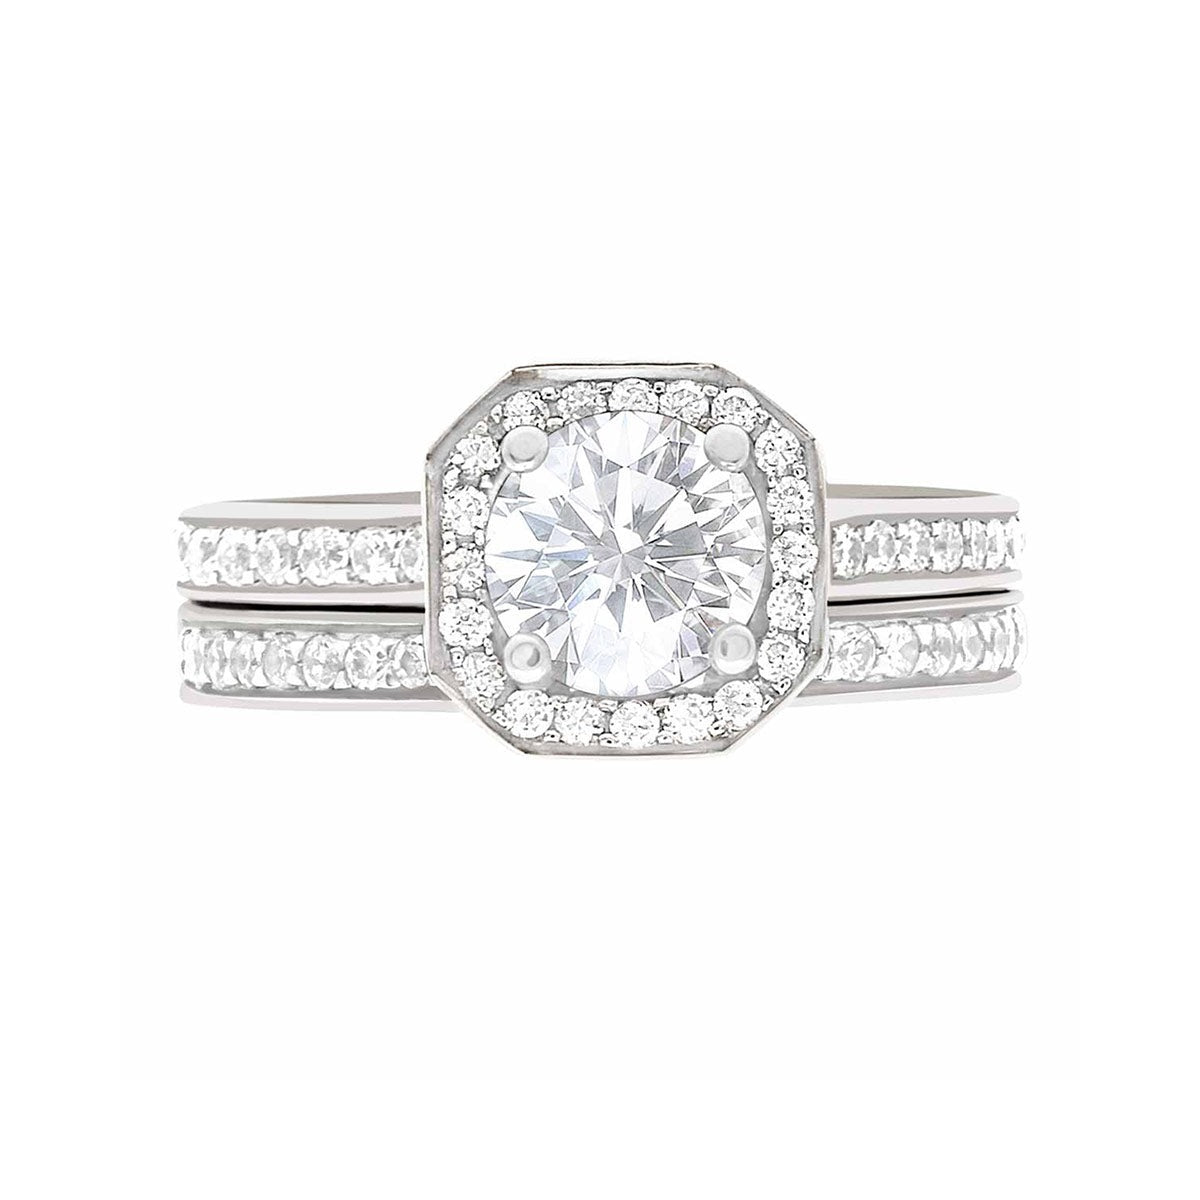 Pavé Halo Diamond Ring in White Gold laying flat with a matching diamond set wedding band